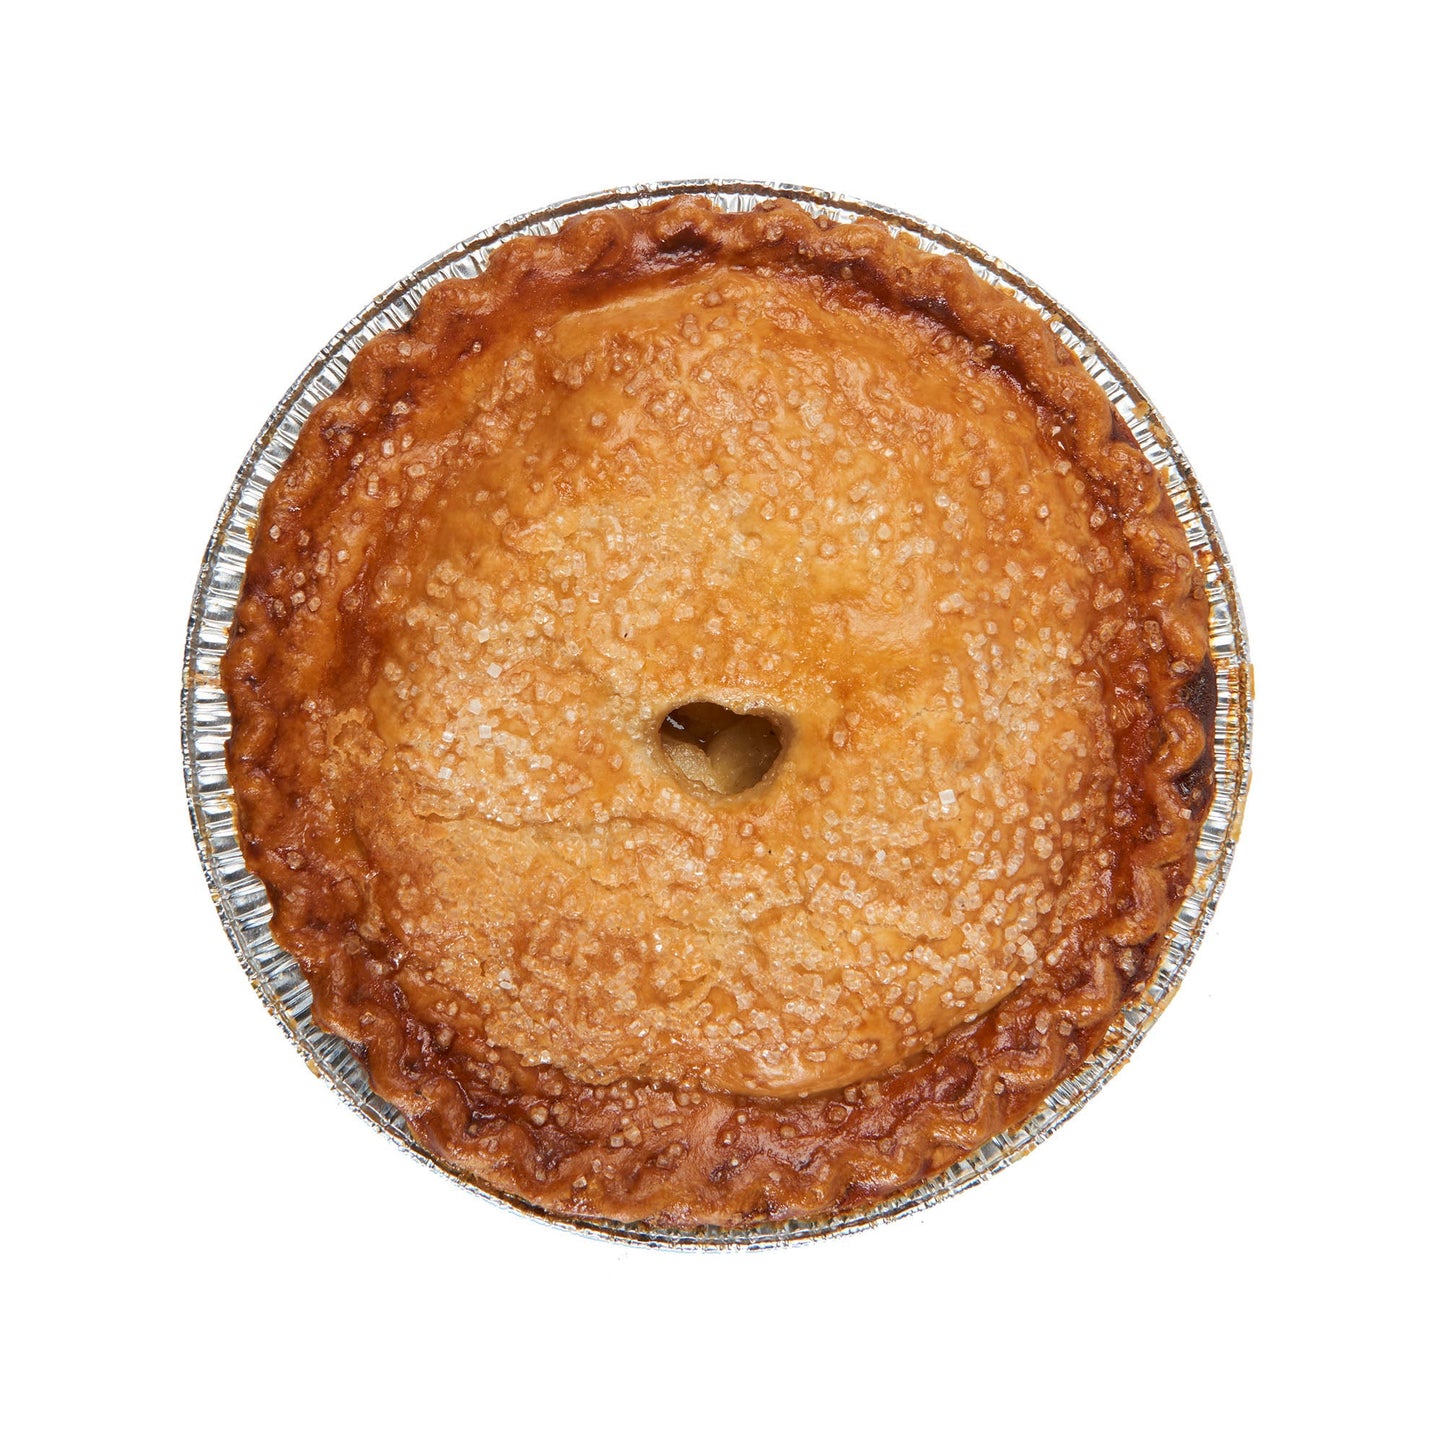 10" Apple Crumble Pie